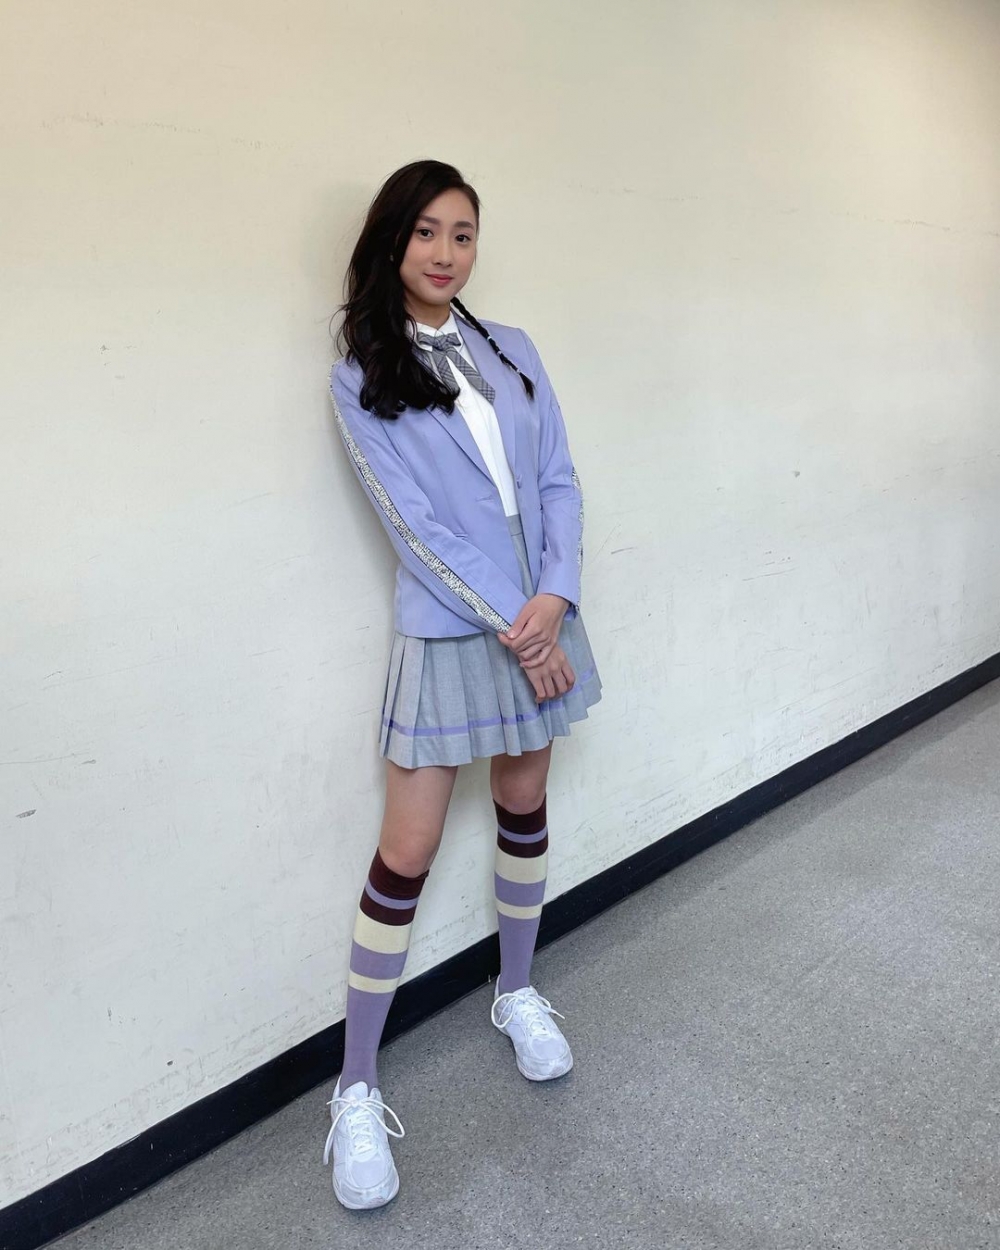 鍾柔美在TVB青春歌舞劇青春本我扮演學生。